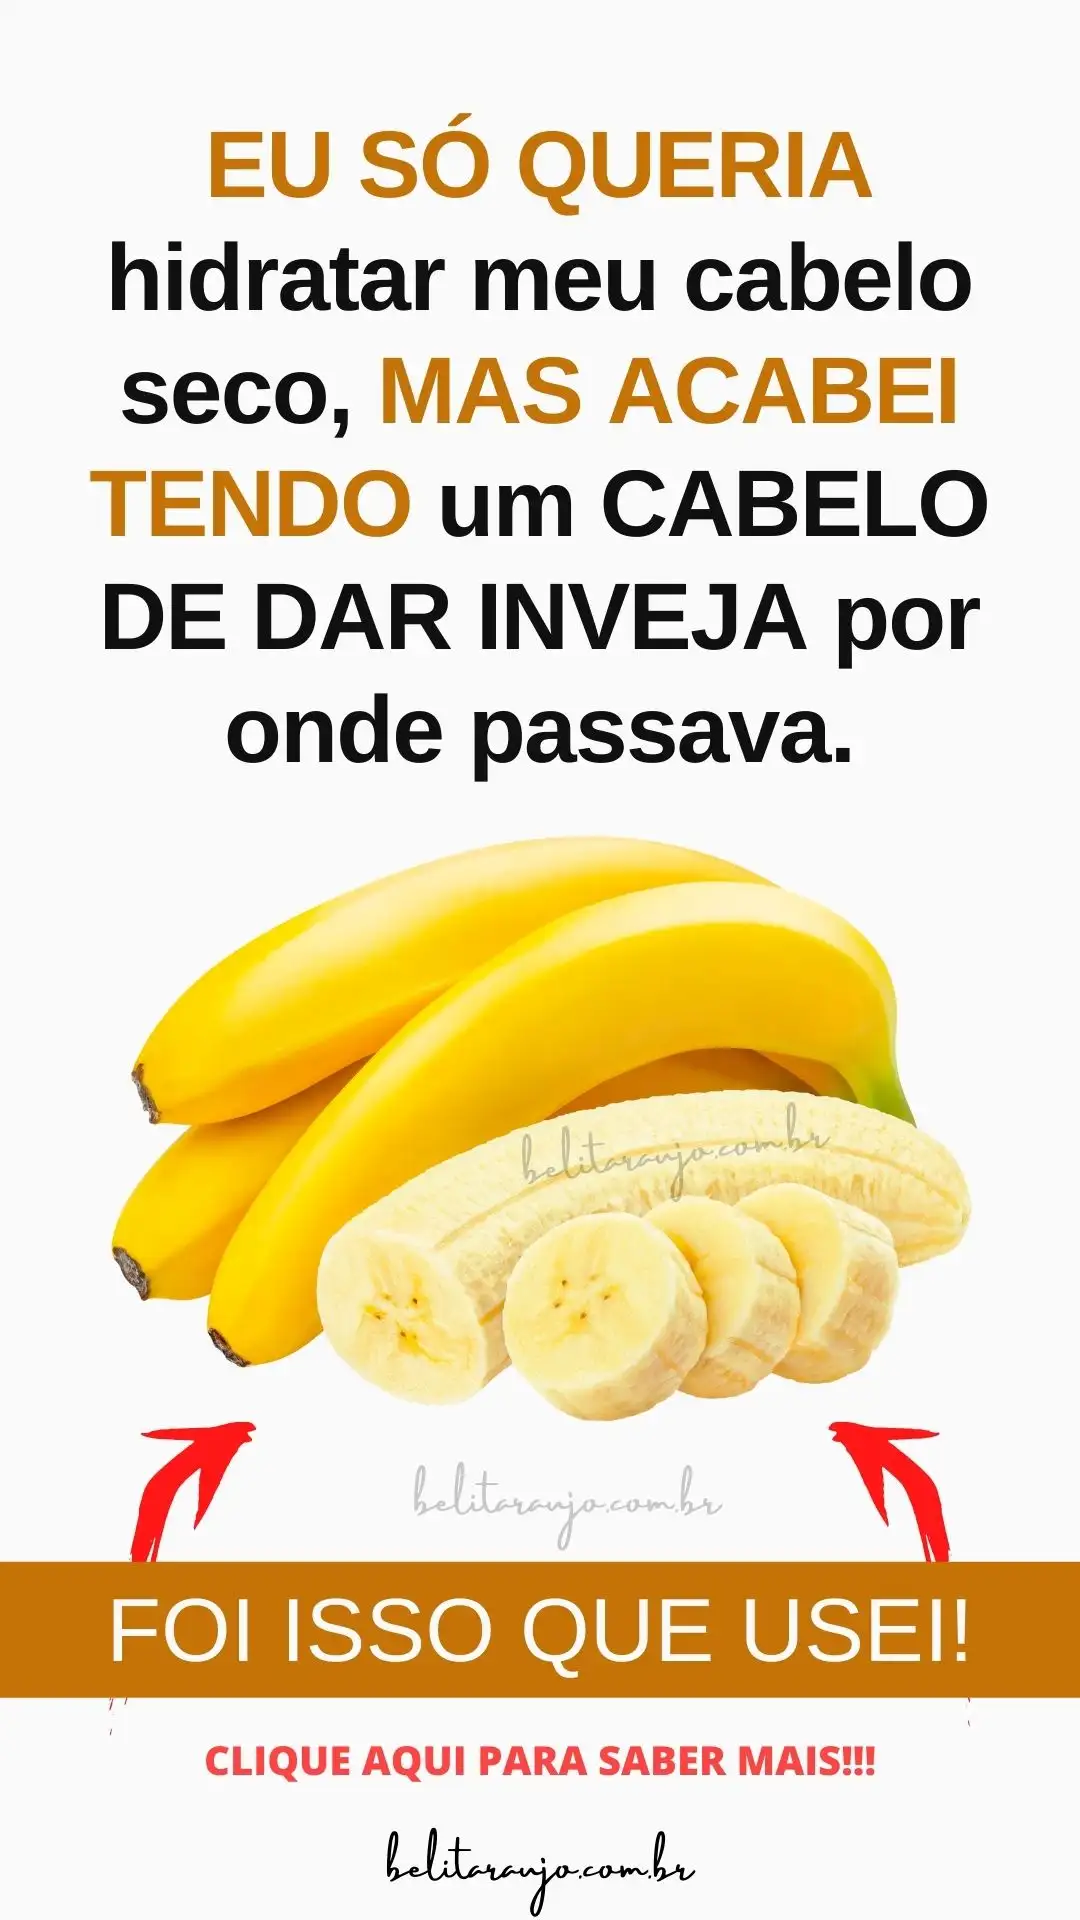 Hidratação Caseira com Banana: CRESCIMENTO ACELERADO!